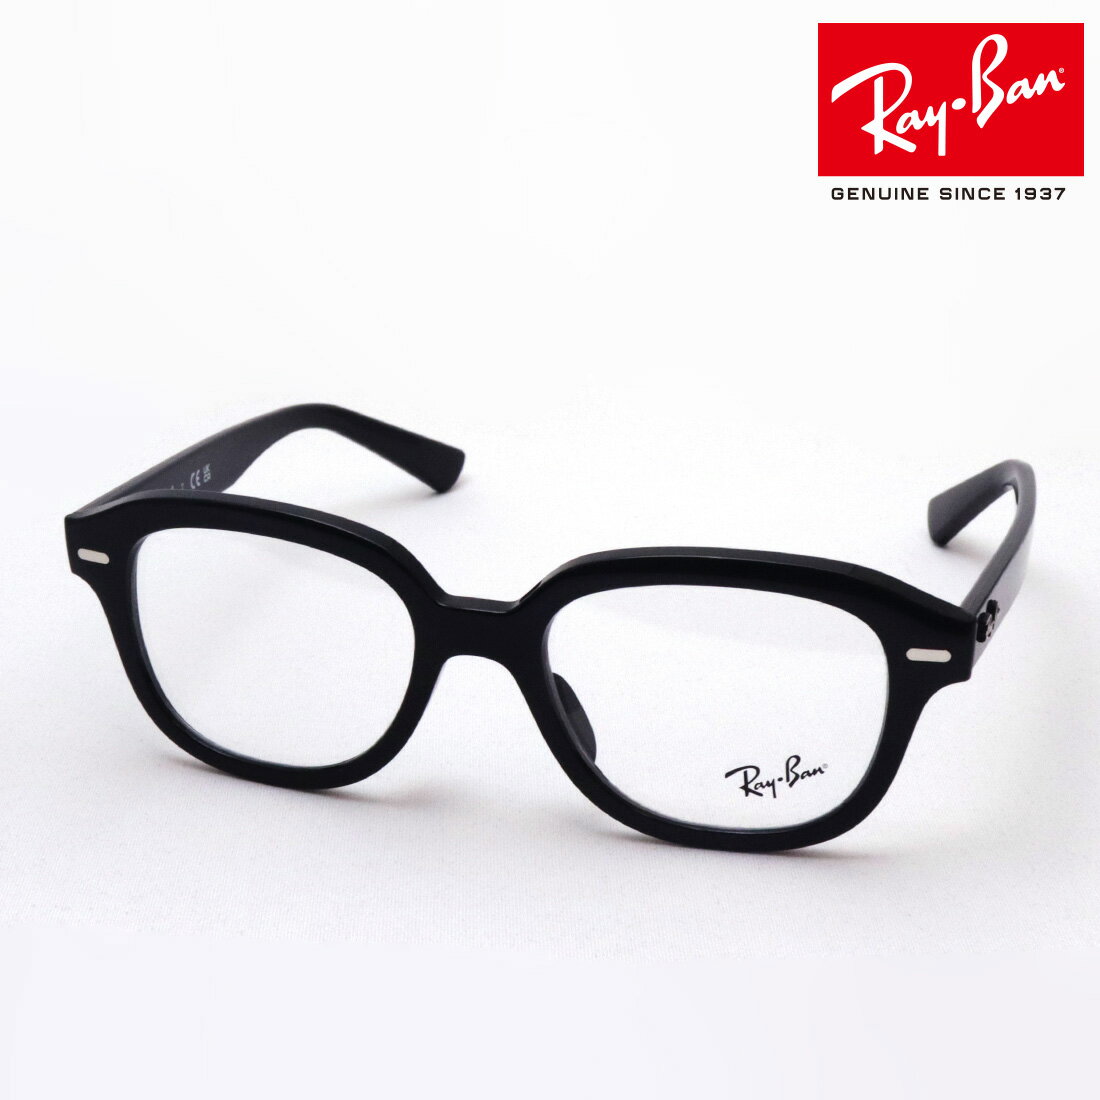 レイバン メガネ メンズ NewModel 正規レイバン日本最大級の品揃え レイバン メガネ フレーム ERIK エリック Ray-Ban RX7215F 2000 伊達メガネ 度付き ブルーライト カット 眼鏡 黒縁 RayBan スクエア ブラック系